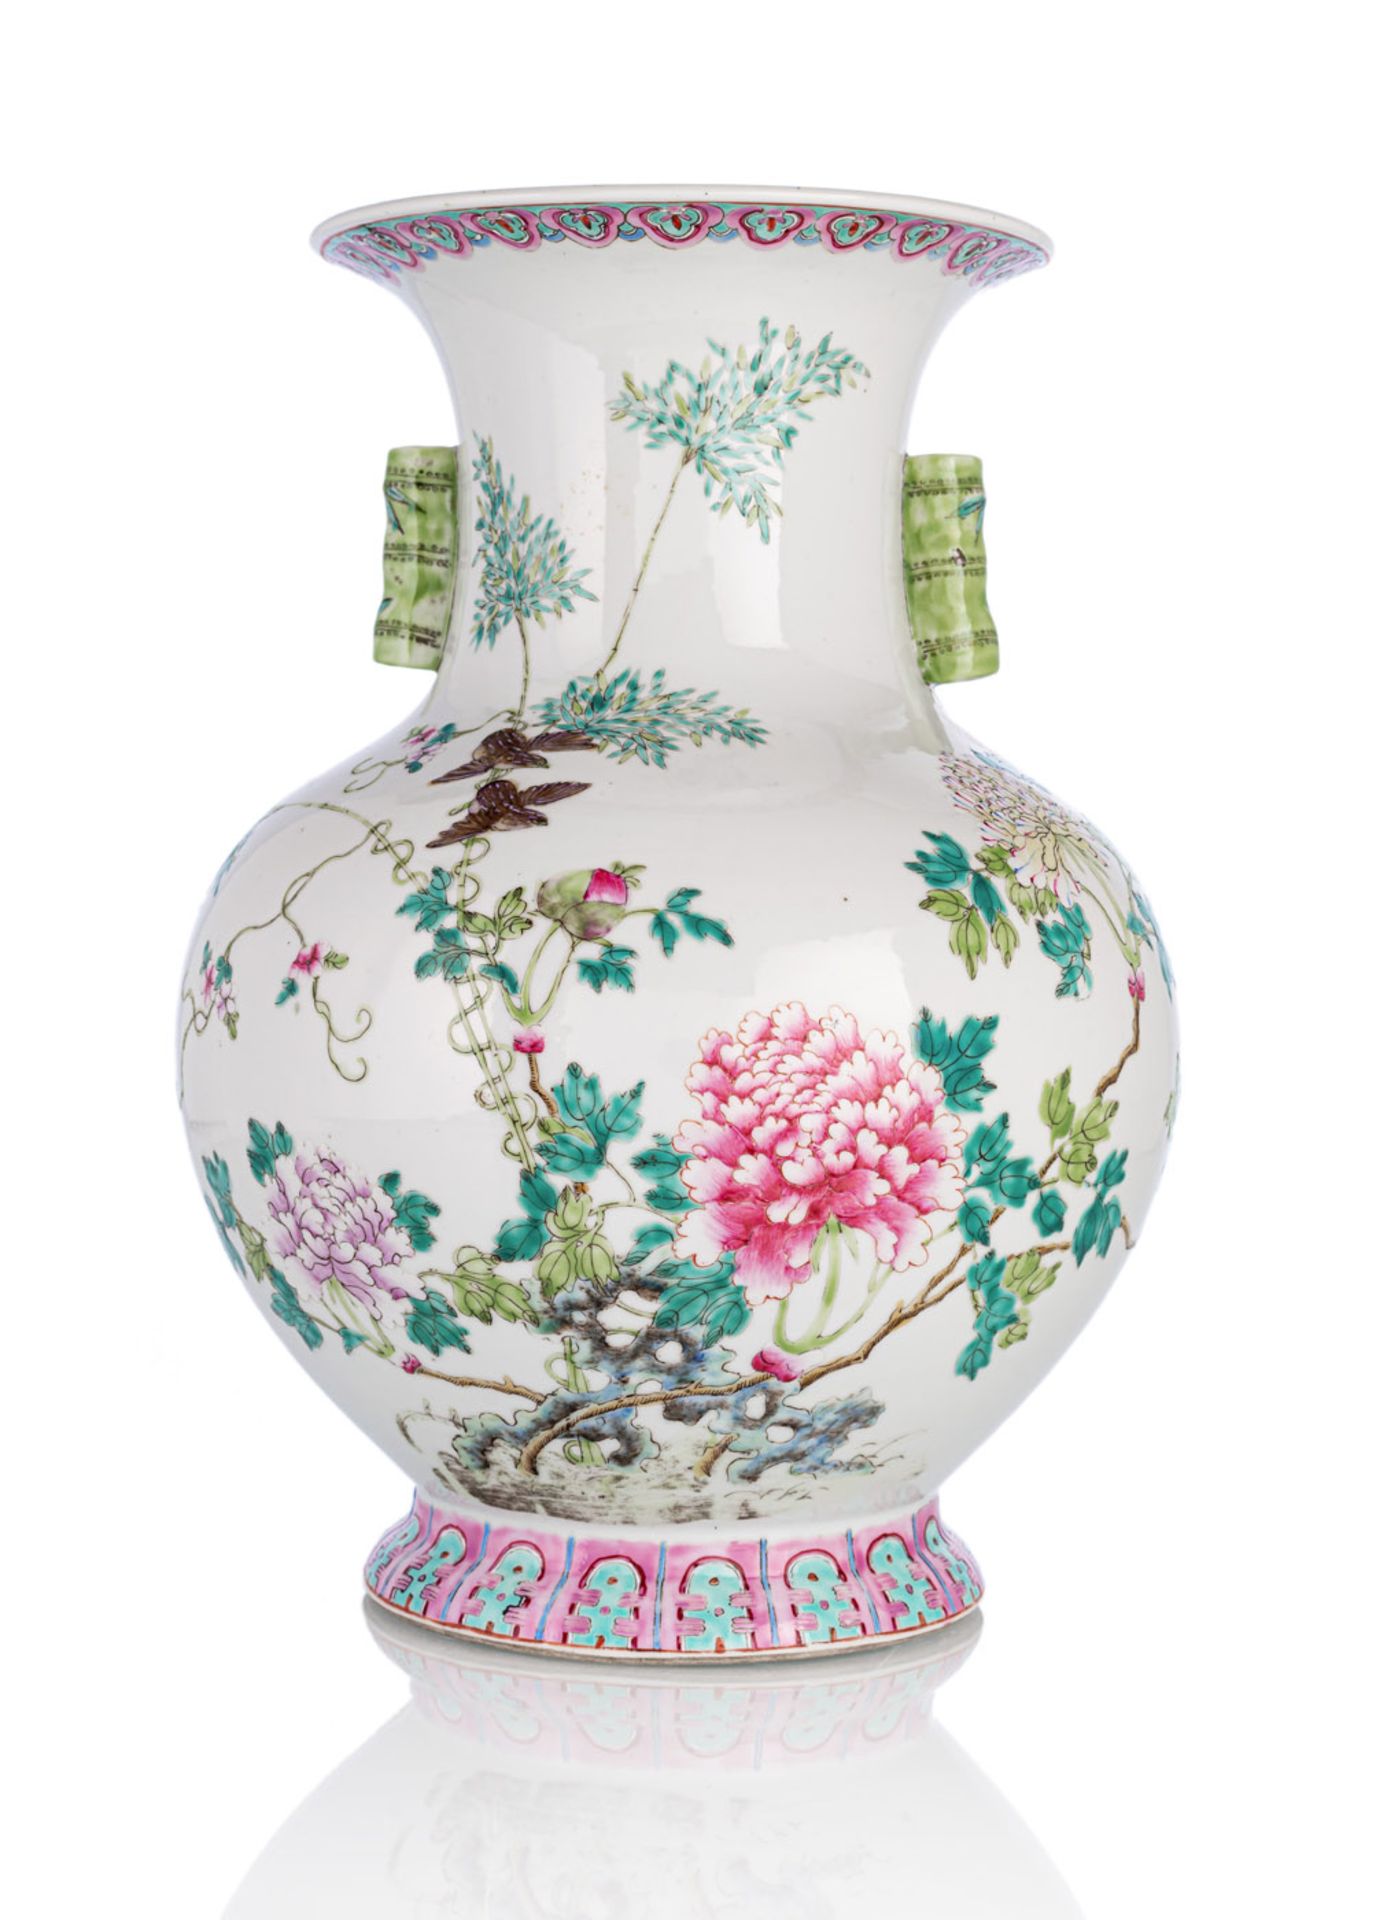 Gebauchte Porzellanvase mit bambusförmigen Handhaben und floralem 'Famille rose'-Dekor